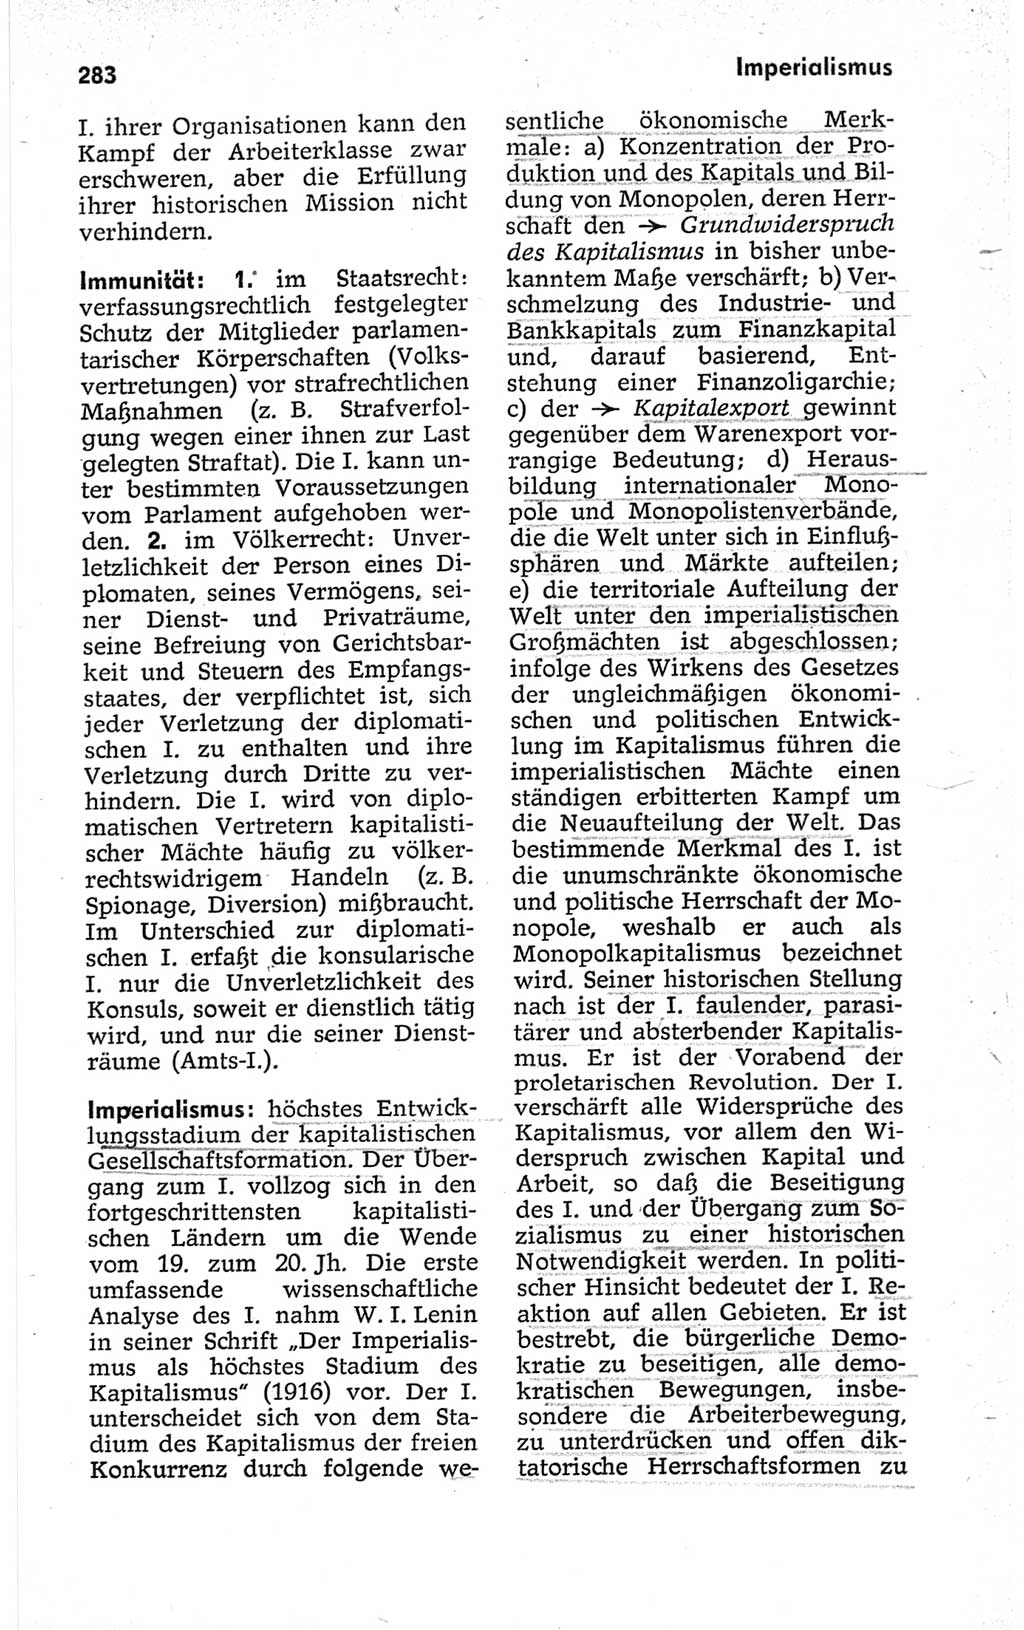 Kleines politisches Wörterbuch [Deutsche Demokratische Republik (DDR)] 1967, Seite 283 (Kl. pol. Wb. DDR 1967, S. 283)